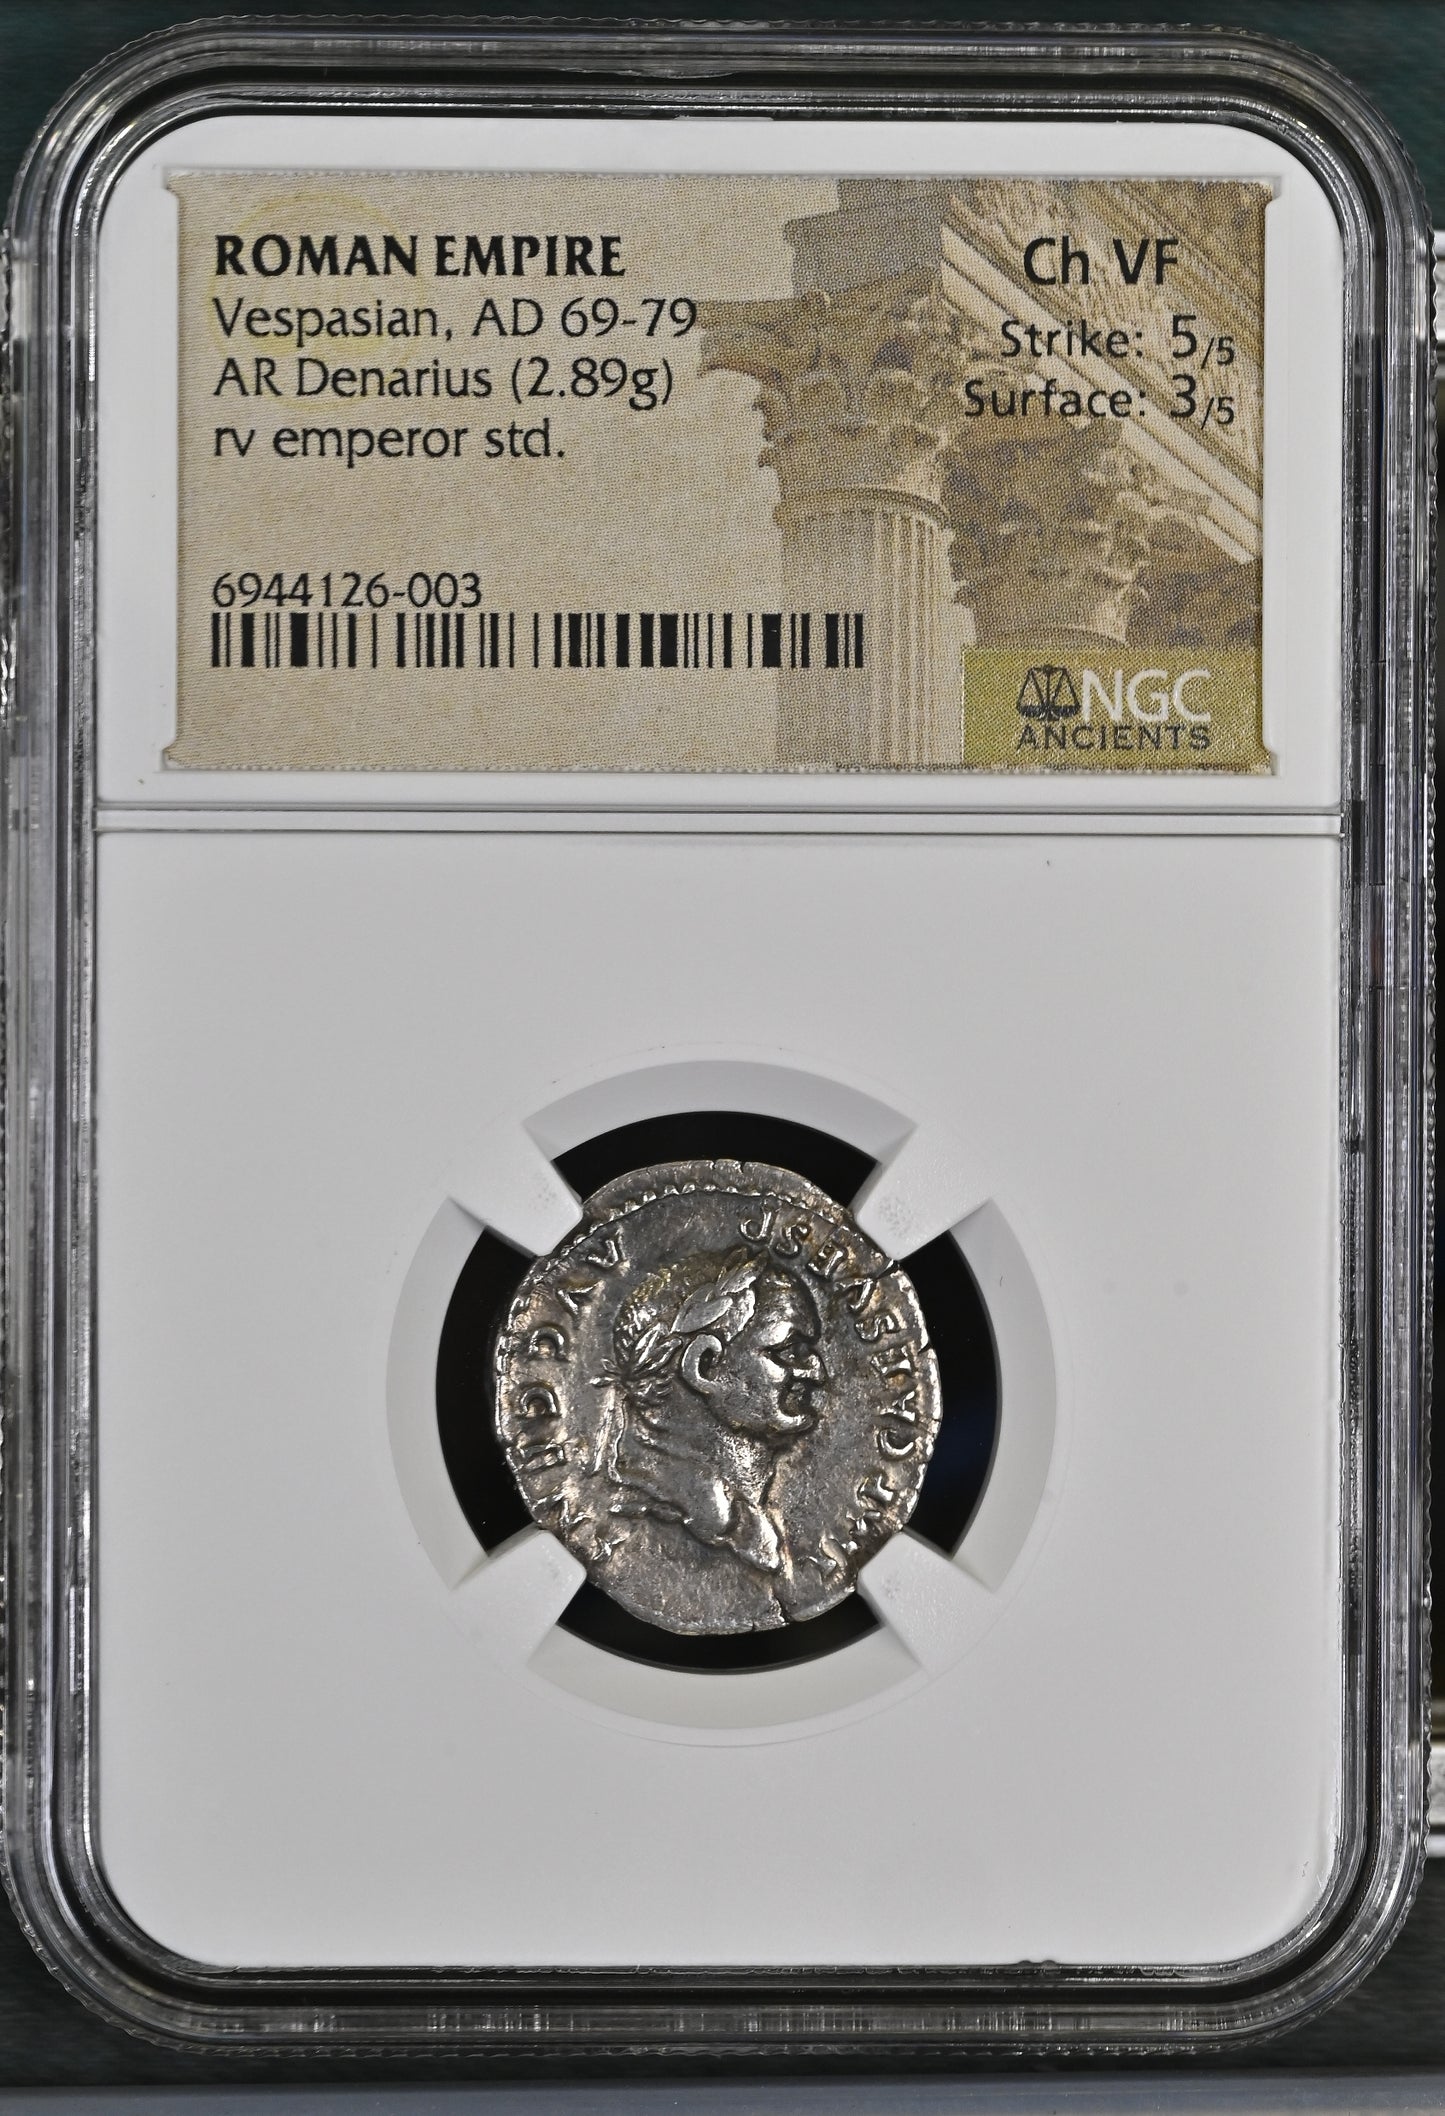 Roman Empire - Vespasian - Silver Denarius - NGC Ch VF - RIC:546